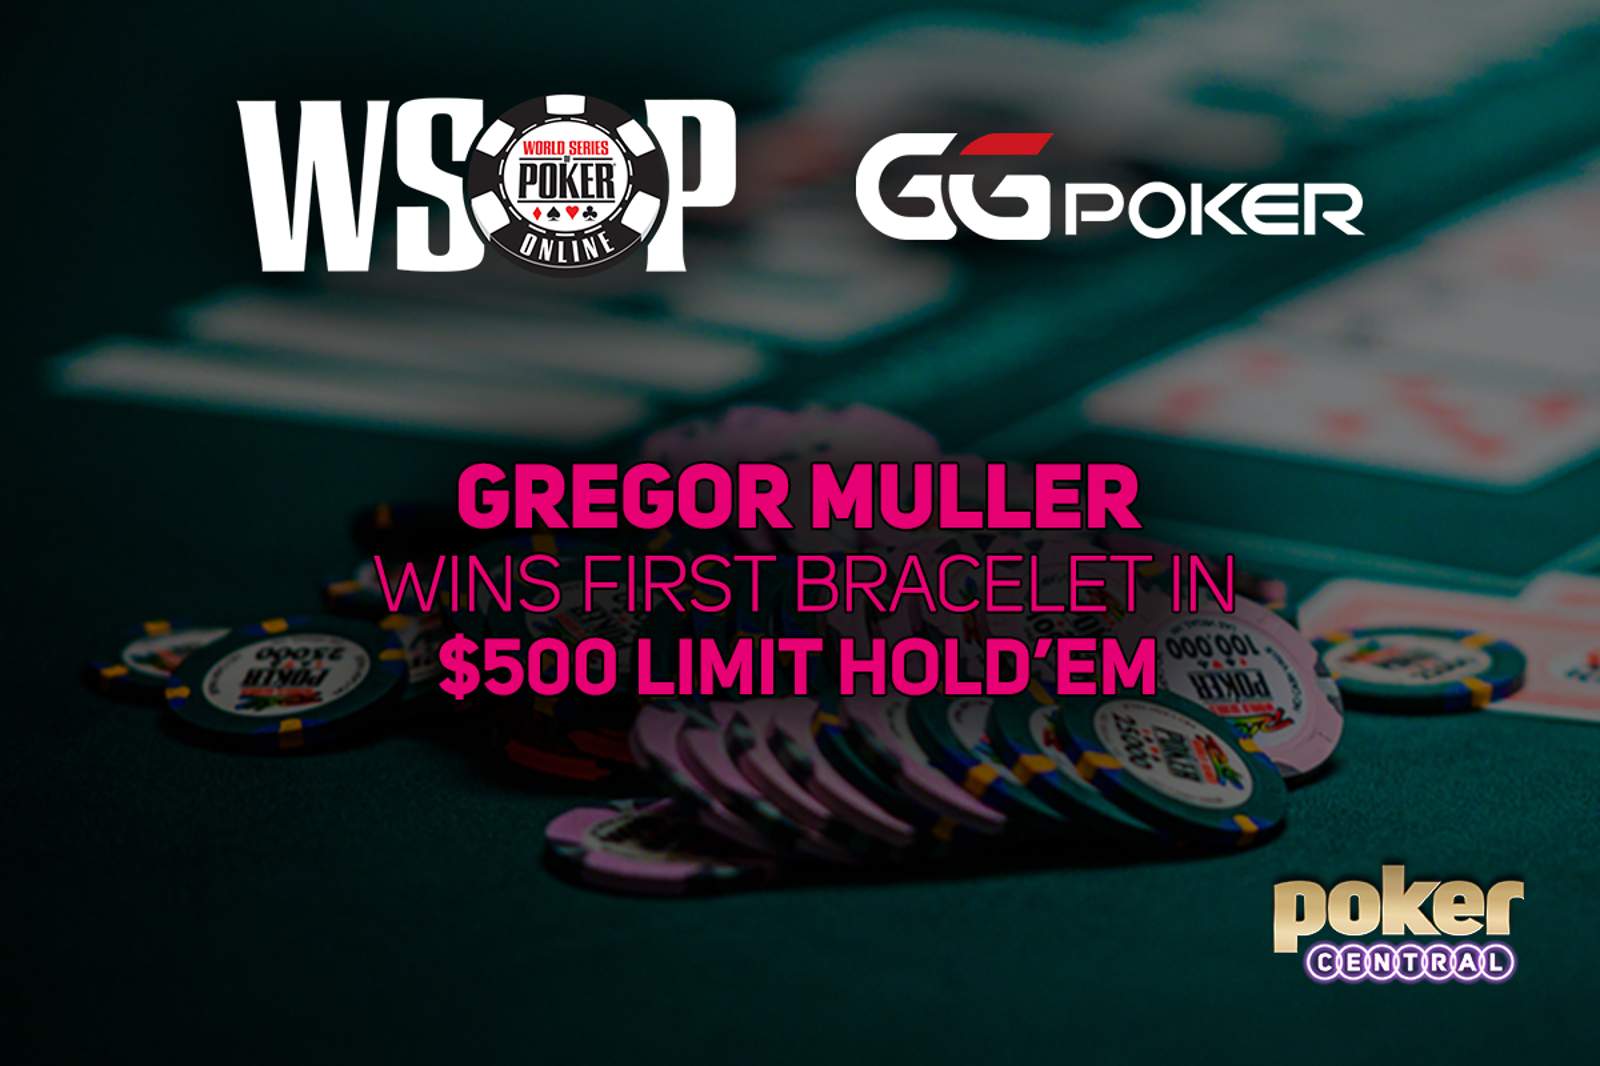 Gregor Muller Wins First Bracelet in GGPoker WSOP Online $500 Limit Hold'em for $45,102